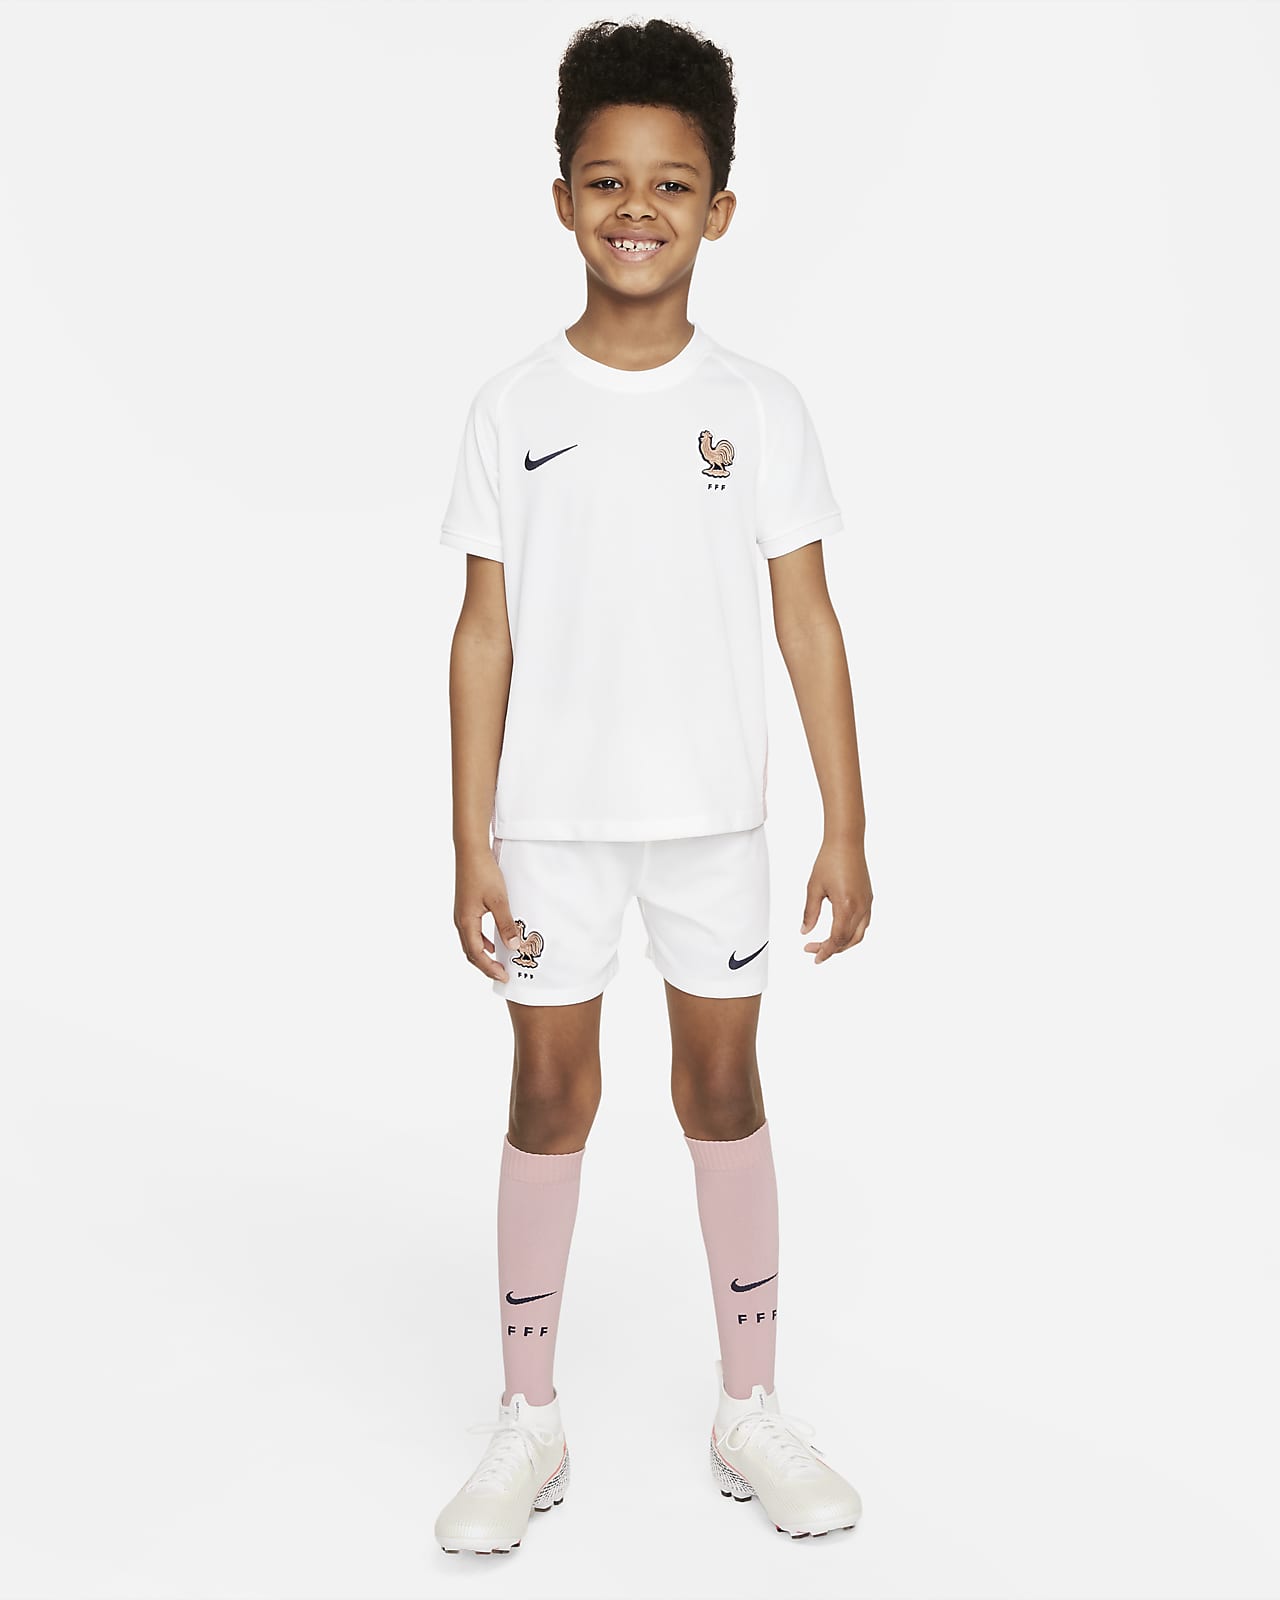 Venkovní fotbalová souprava Nike FFF 2022 pro malé děti